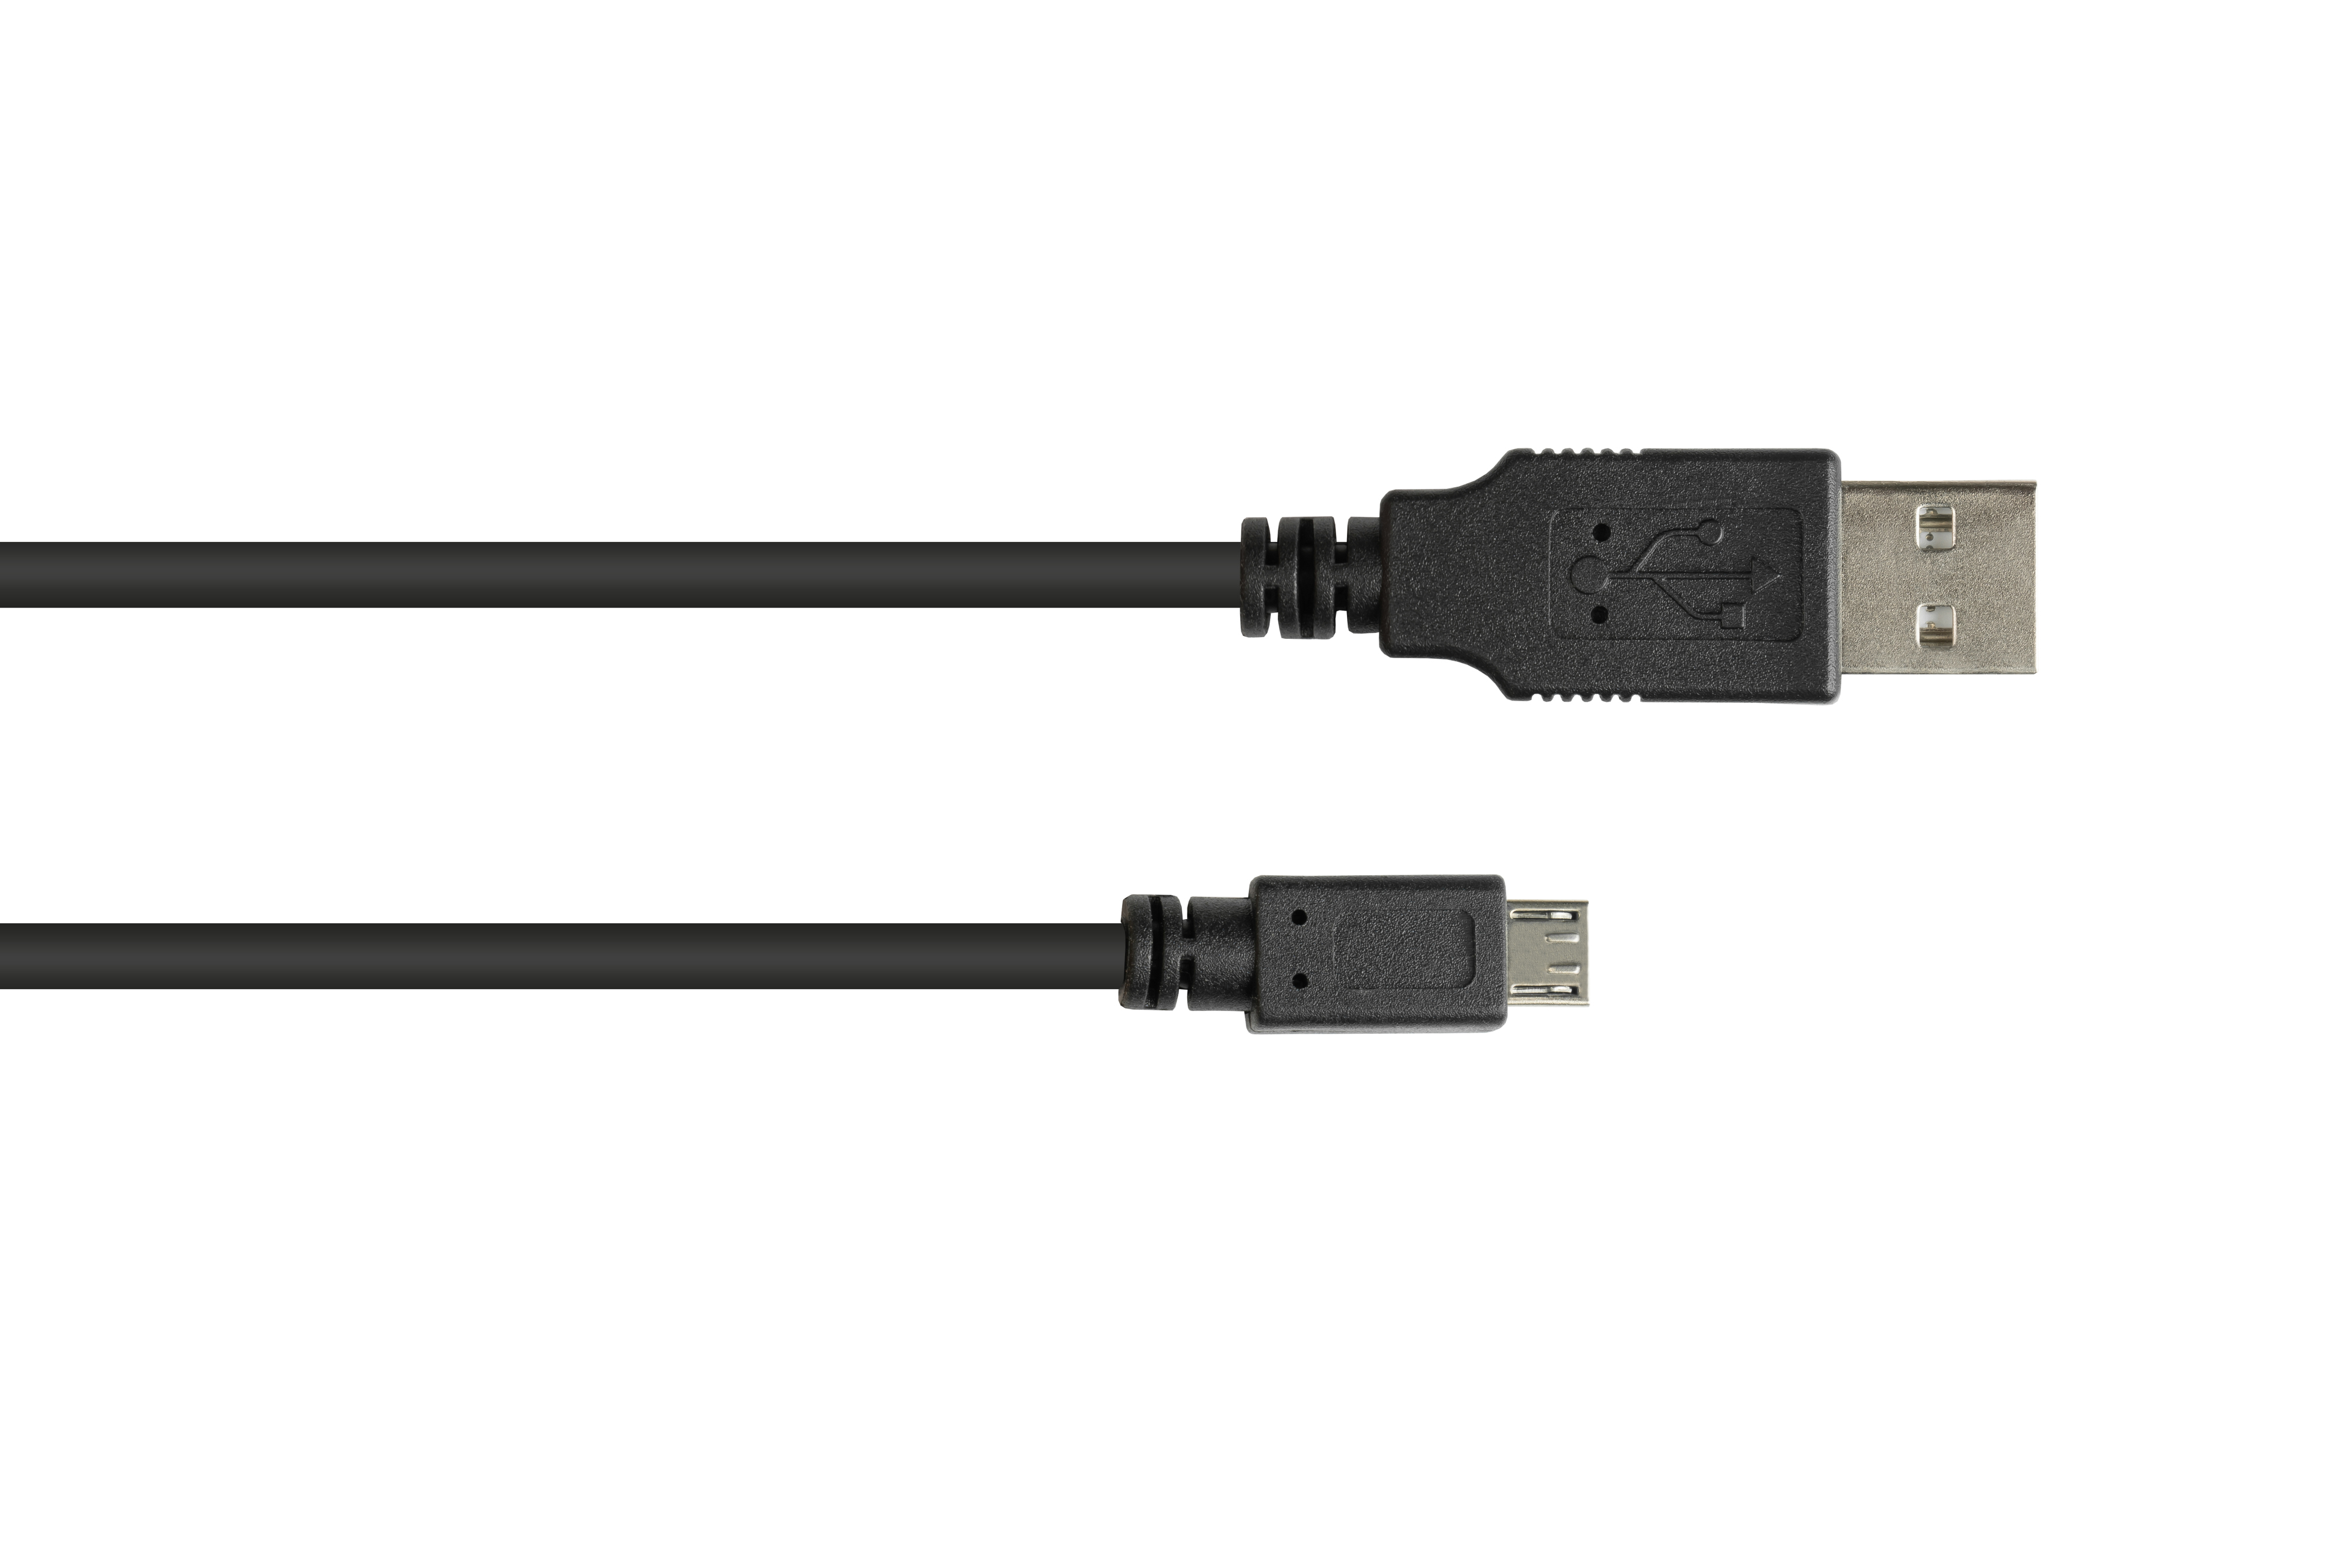 CONNECTIONS schwarz GOOD Anschlusskabel an Stecker A 2.0 USB Micro B, Stecker